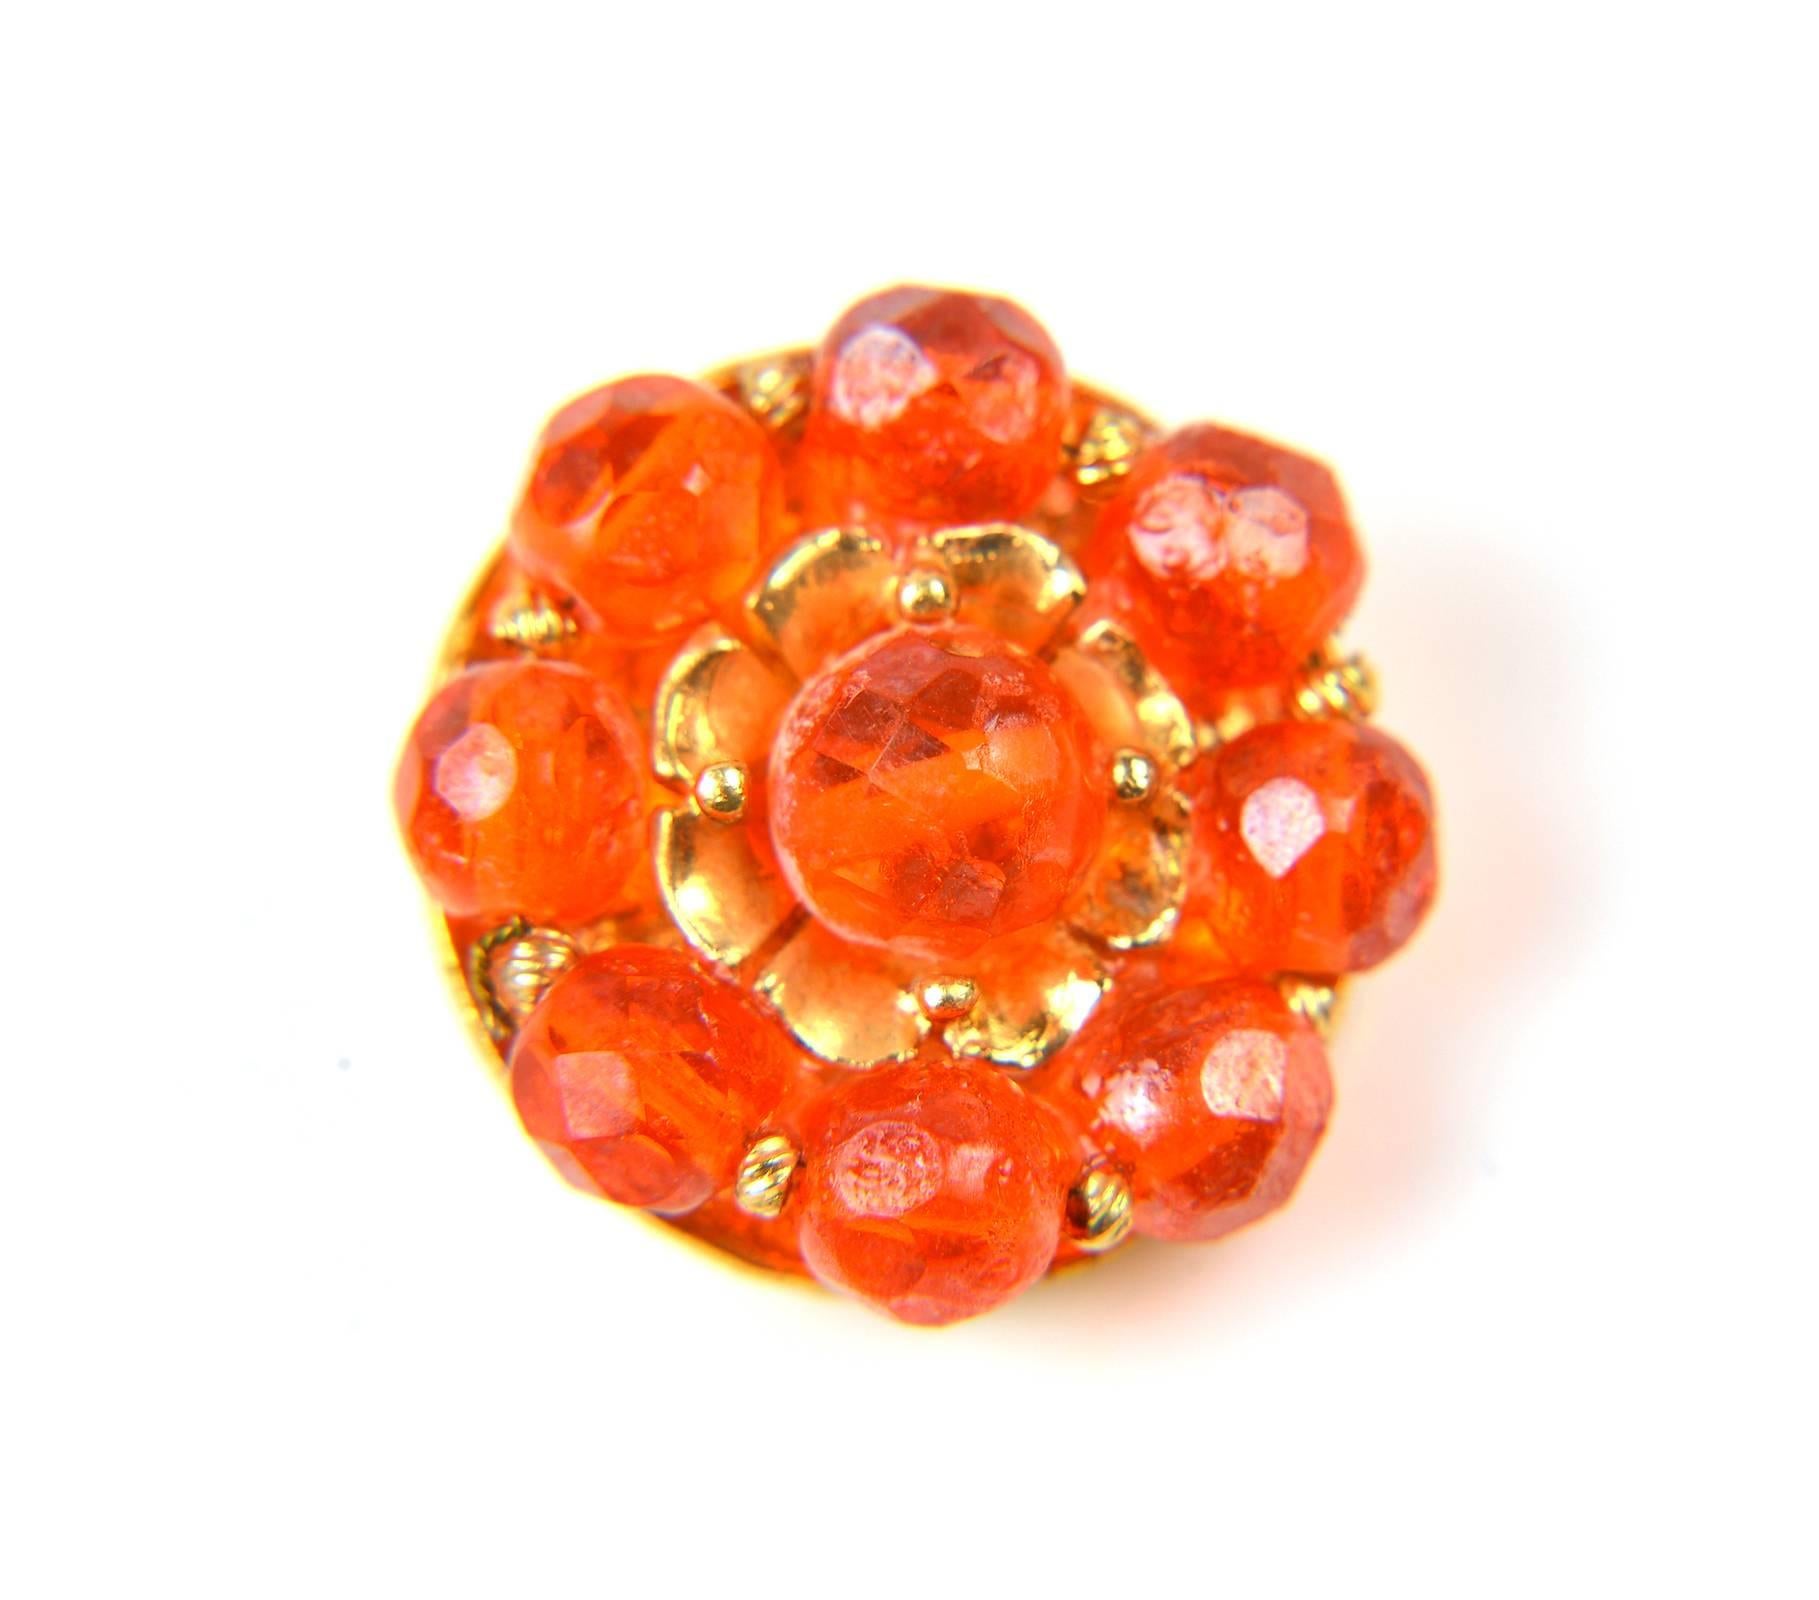 Women's 1960s Hattie Carnegie Tangerine Glass Bead Necklace and Earrings For Sale